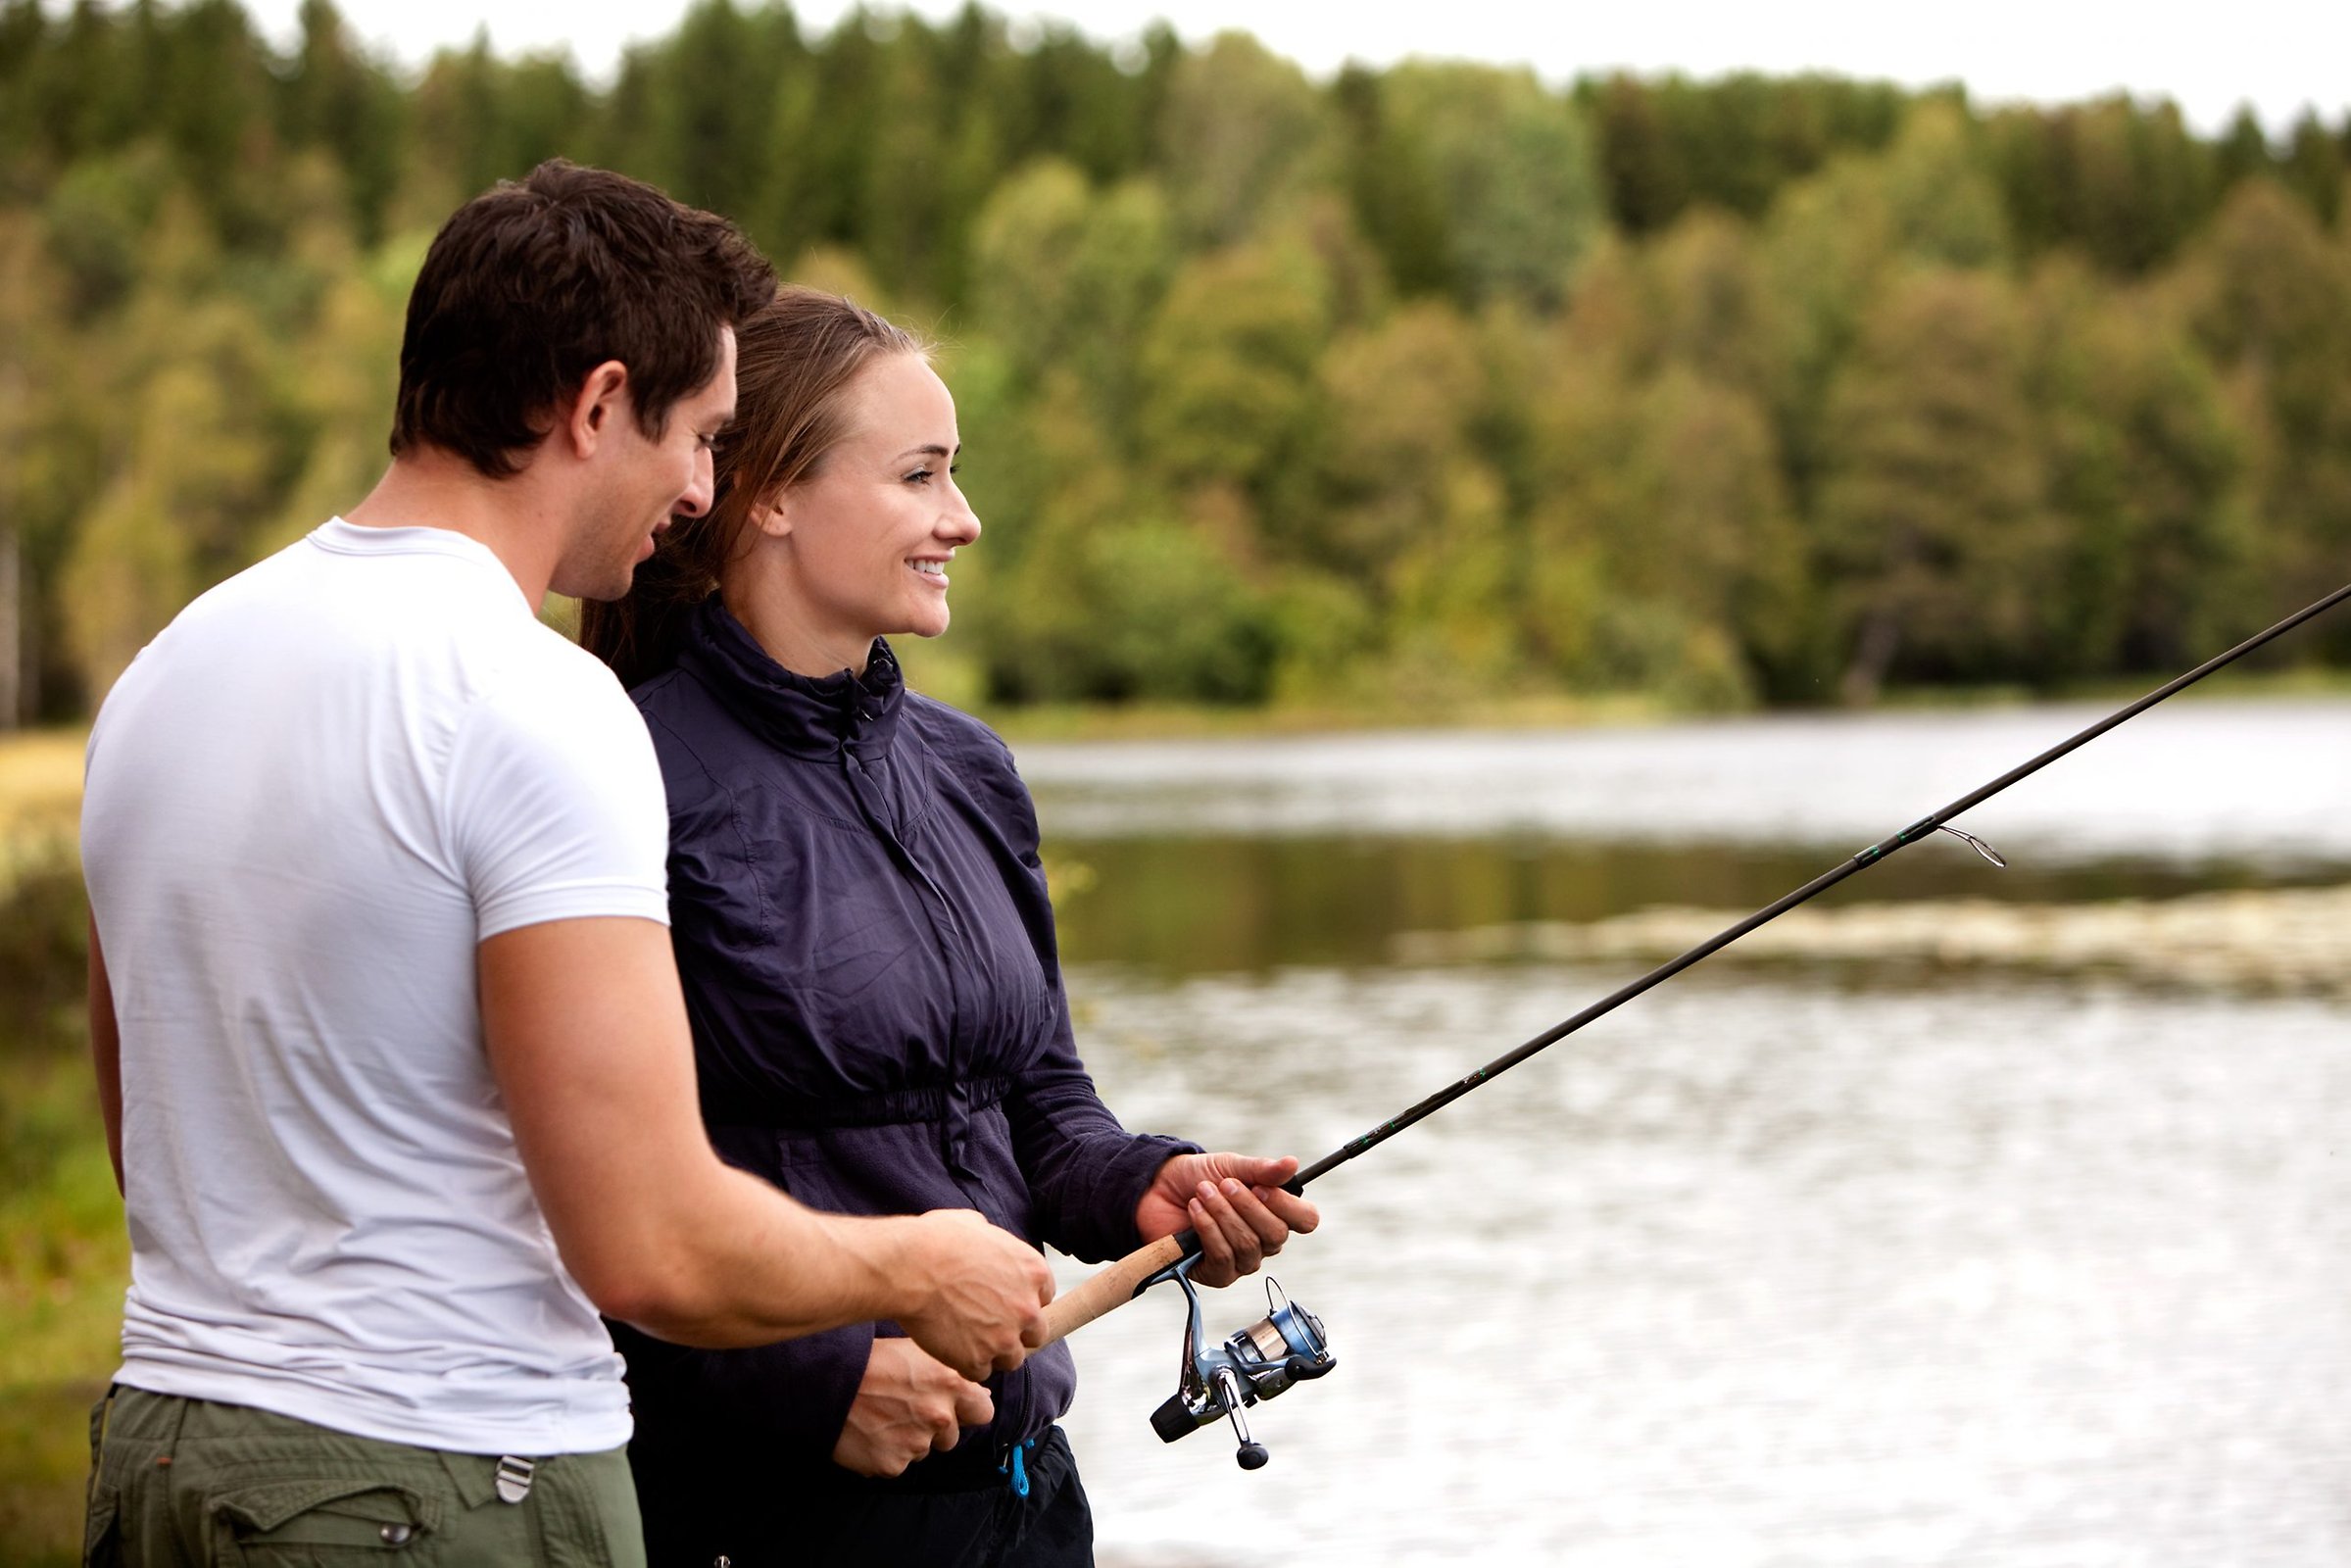 Alttext: En tjej och en kille står och håller ett fiskespö. I bakgrunden syns en sjö och skog. Fotograf: Sundsvalls kommun Bildtext: A man showing a woman how to fish